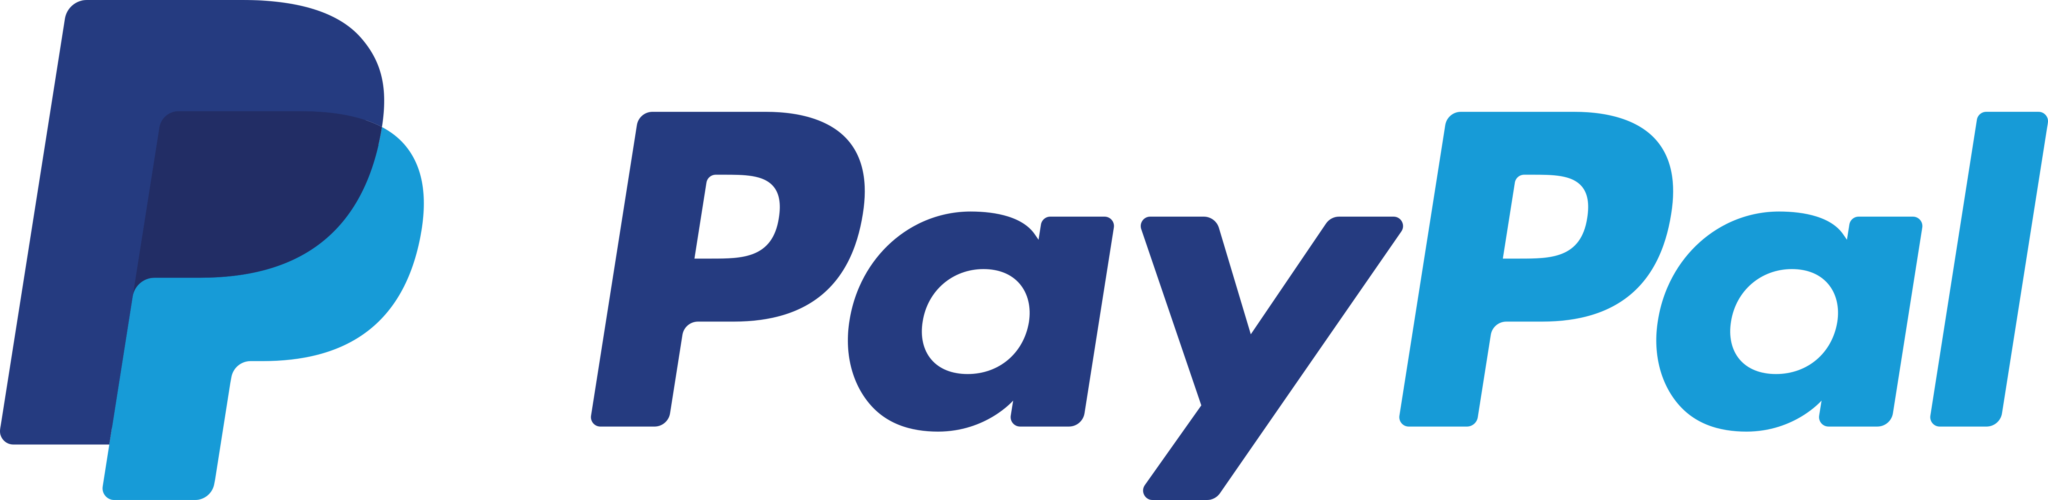 paypal logo hd